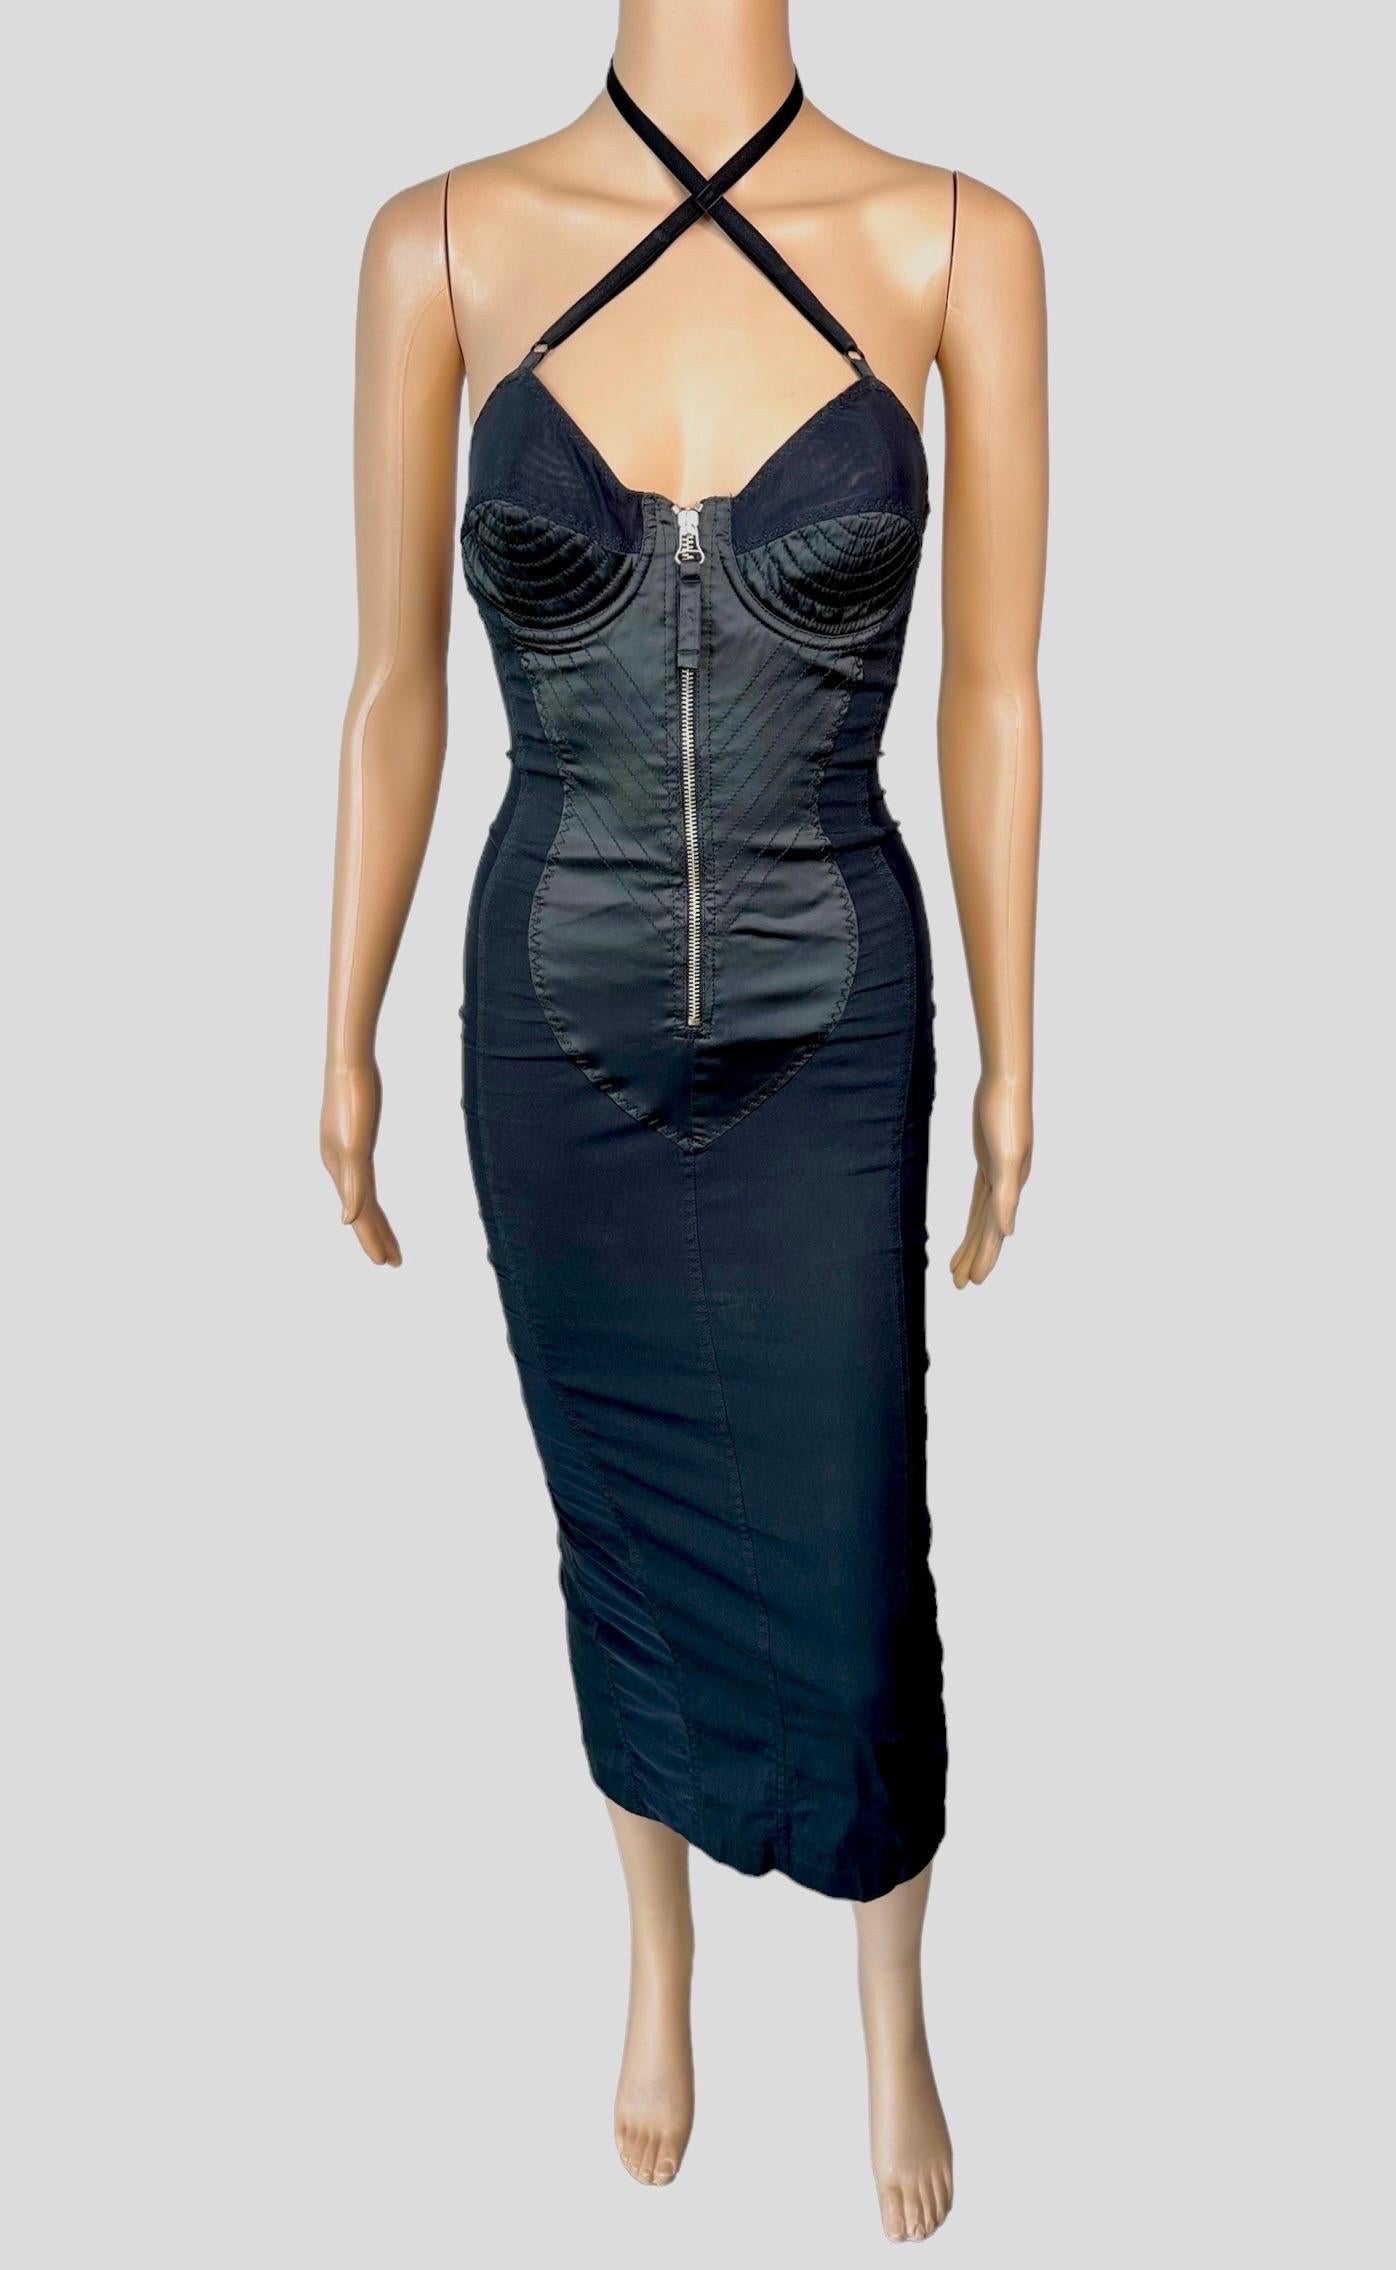 Jean Paul Gaultier Classique 1990's Vintage Cone Bra Corset Bondage Semi-Sheer Panels Black Evening Dress Size IT 38